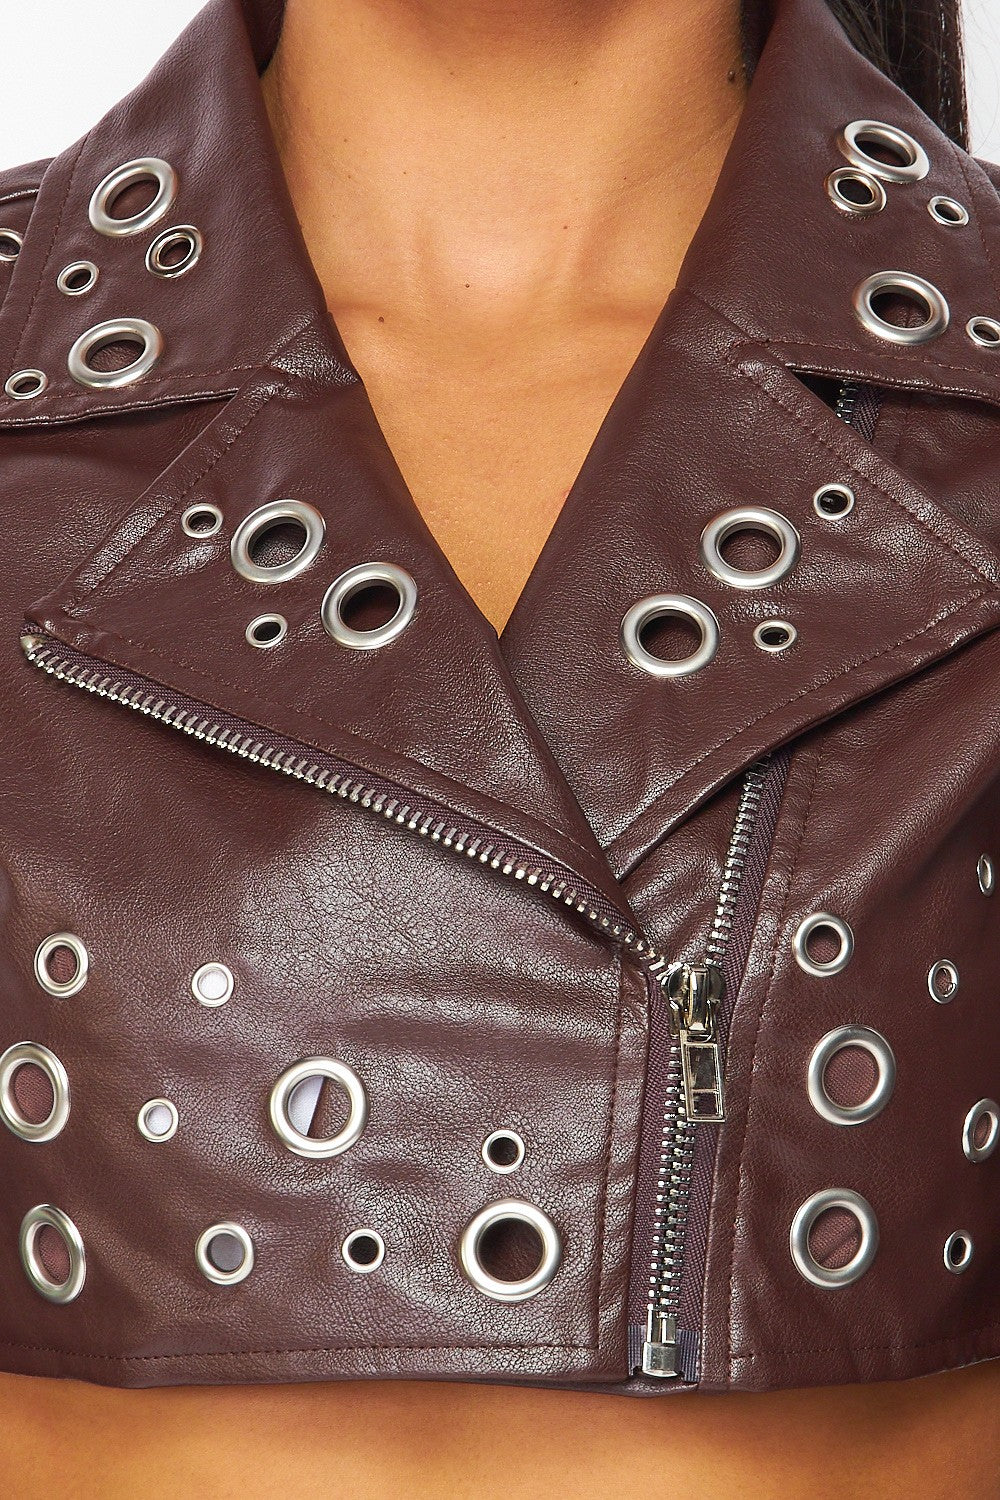 Jody Grommet Faux Leather Cropped Moto Jacket